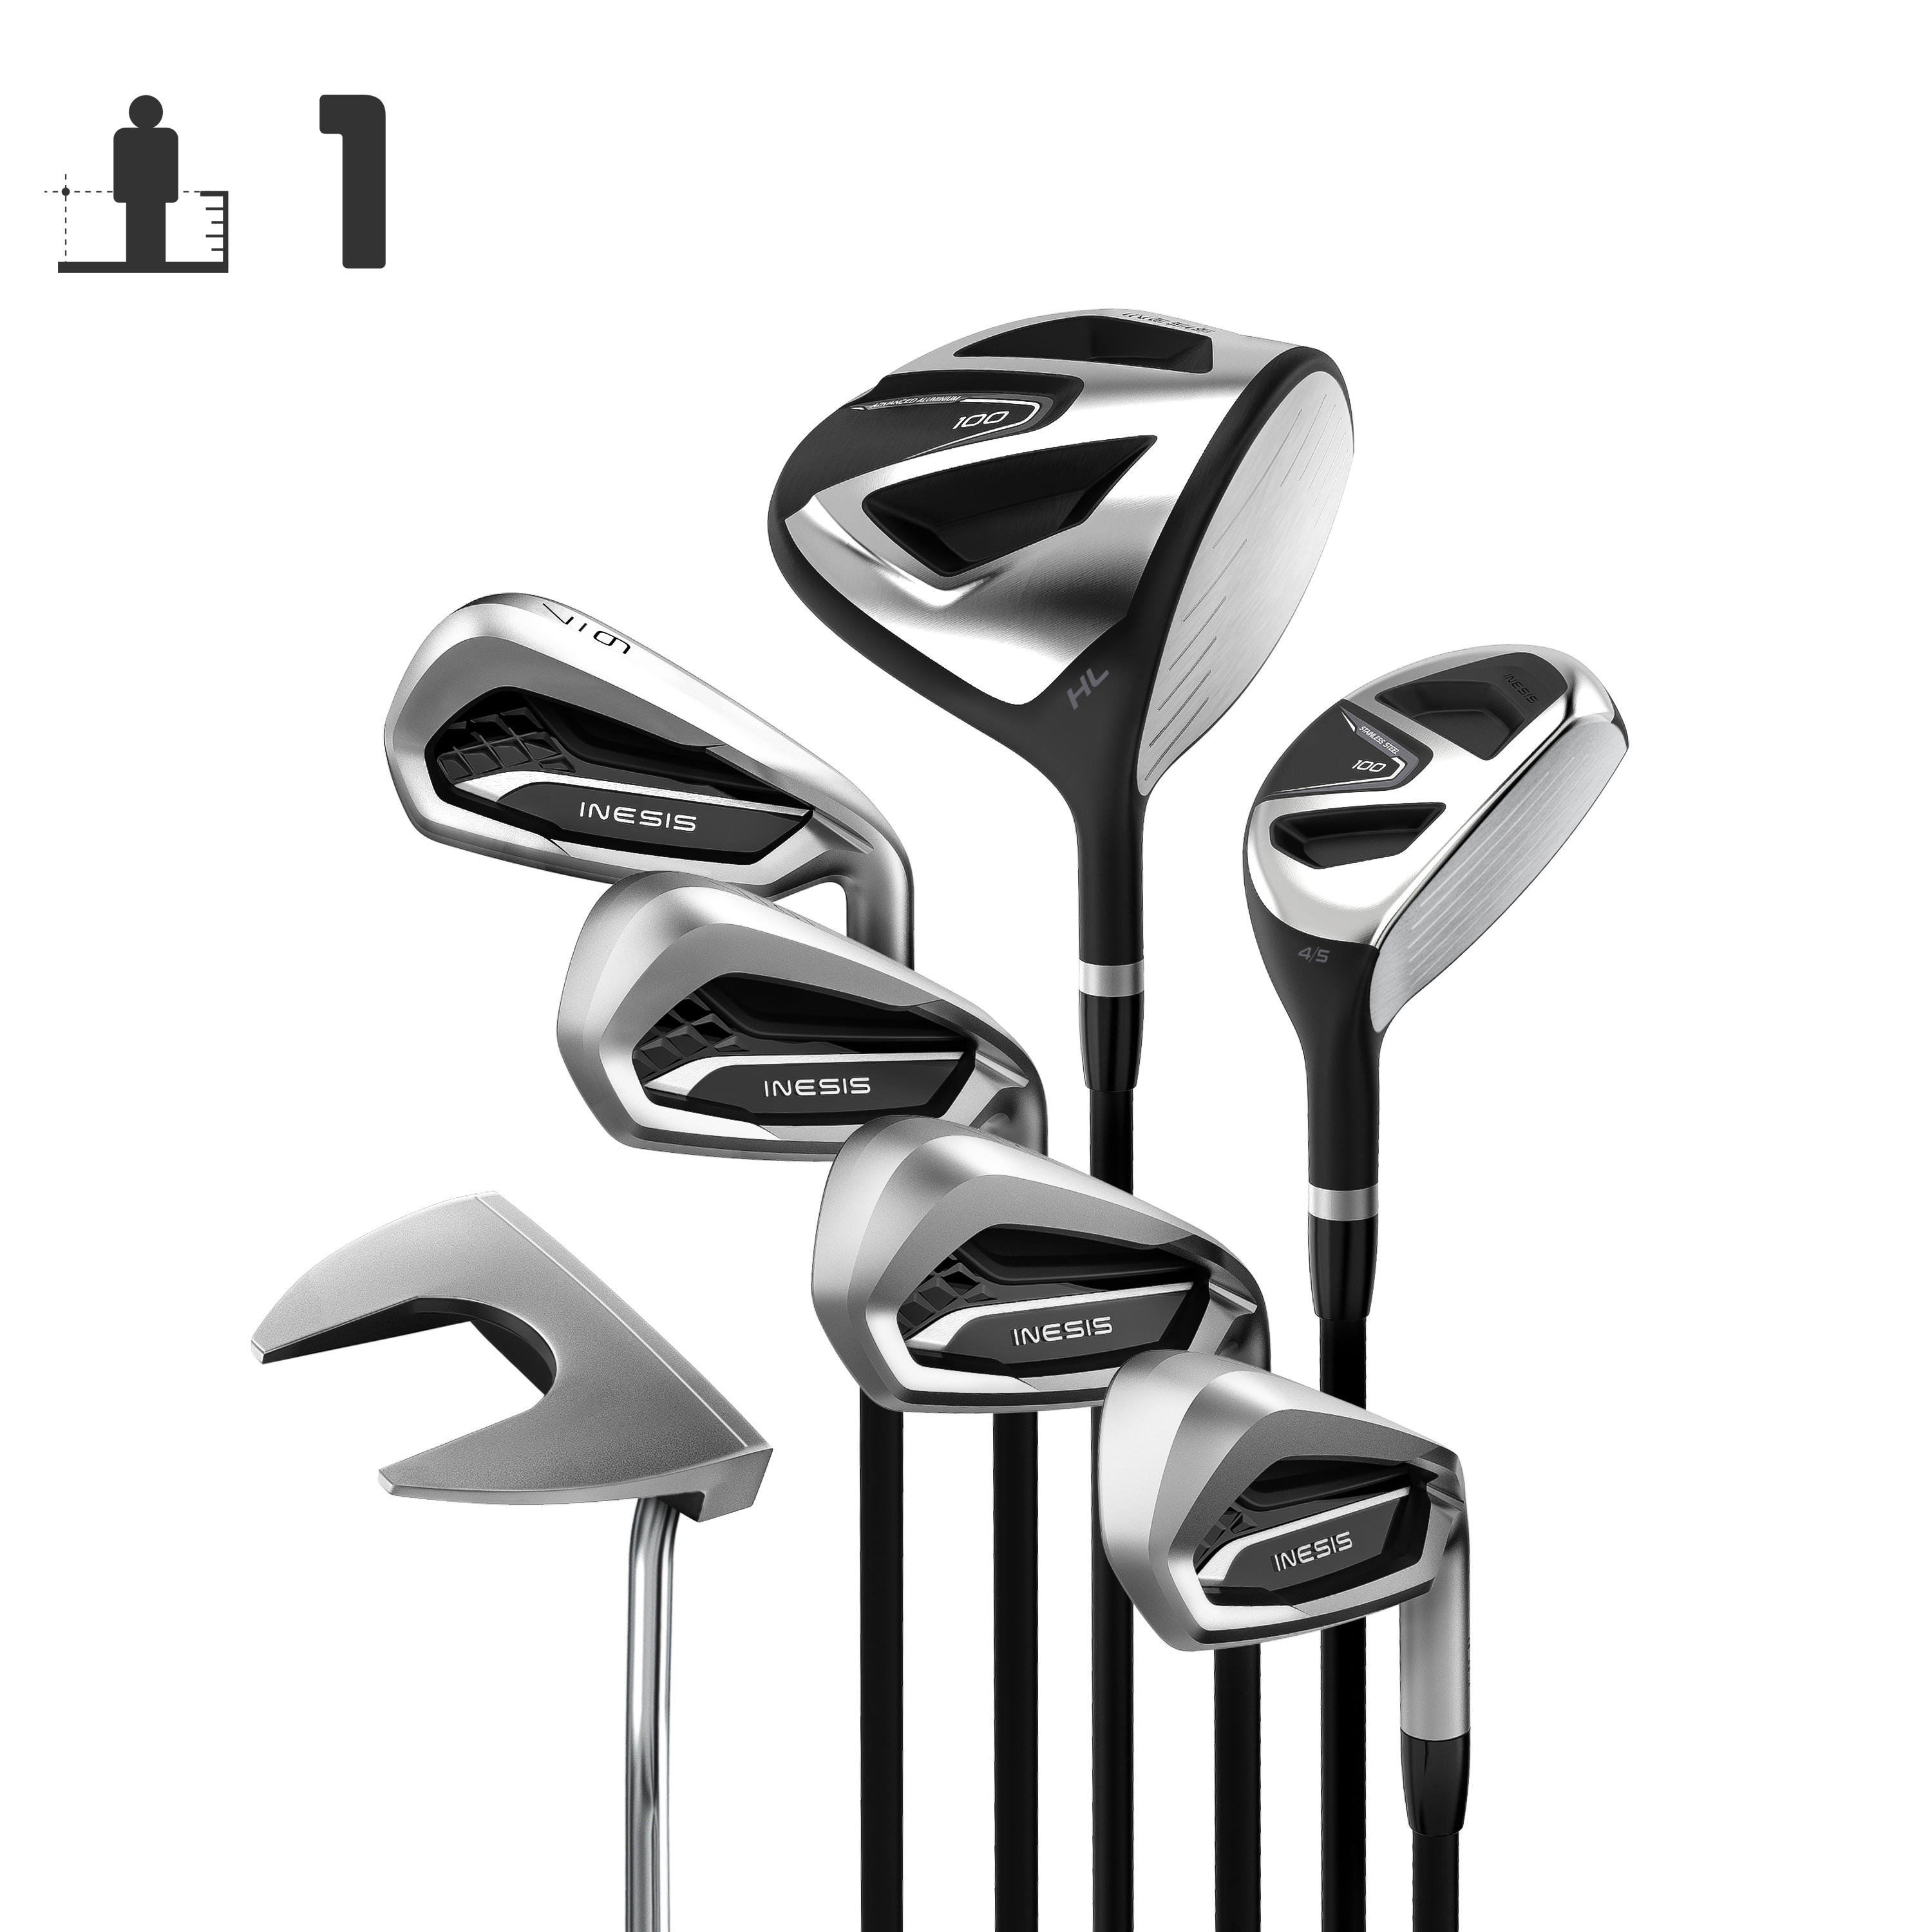 [ส่งฟรี ] ไม้กอล์ฟครบชุด 7 ไม้ ชุดไม้กอล์ฟก้านแกรไฟต์ 7 ไม้สำหรับผู้ใหญ่ถนัดขวารุ่น 100 (เบอร์ 1) GOLF CLUBS SET GOLF KIT 7 CLUBS ADULT 100 RIGHT HANDED GRAPHITE SIZE 1 Golf clubs set MEN WOMEN Golf club set ไม้กอล์ฟครบชุด ของแท้